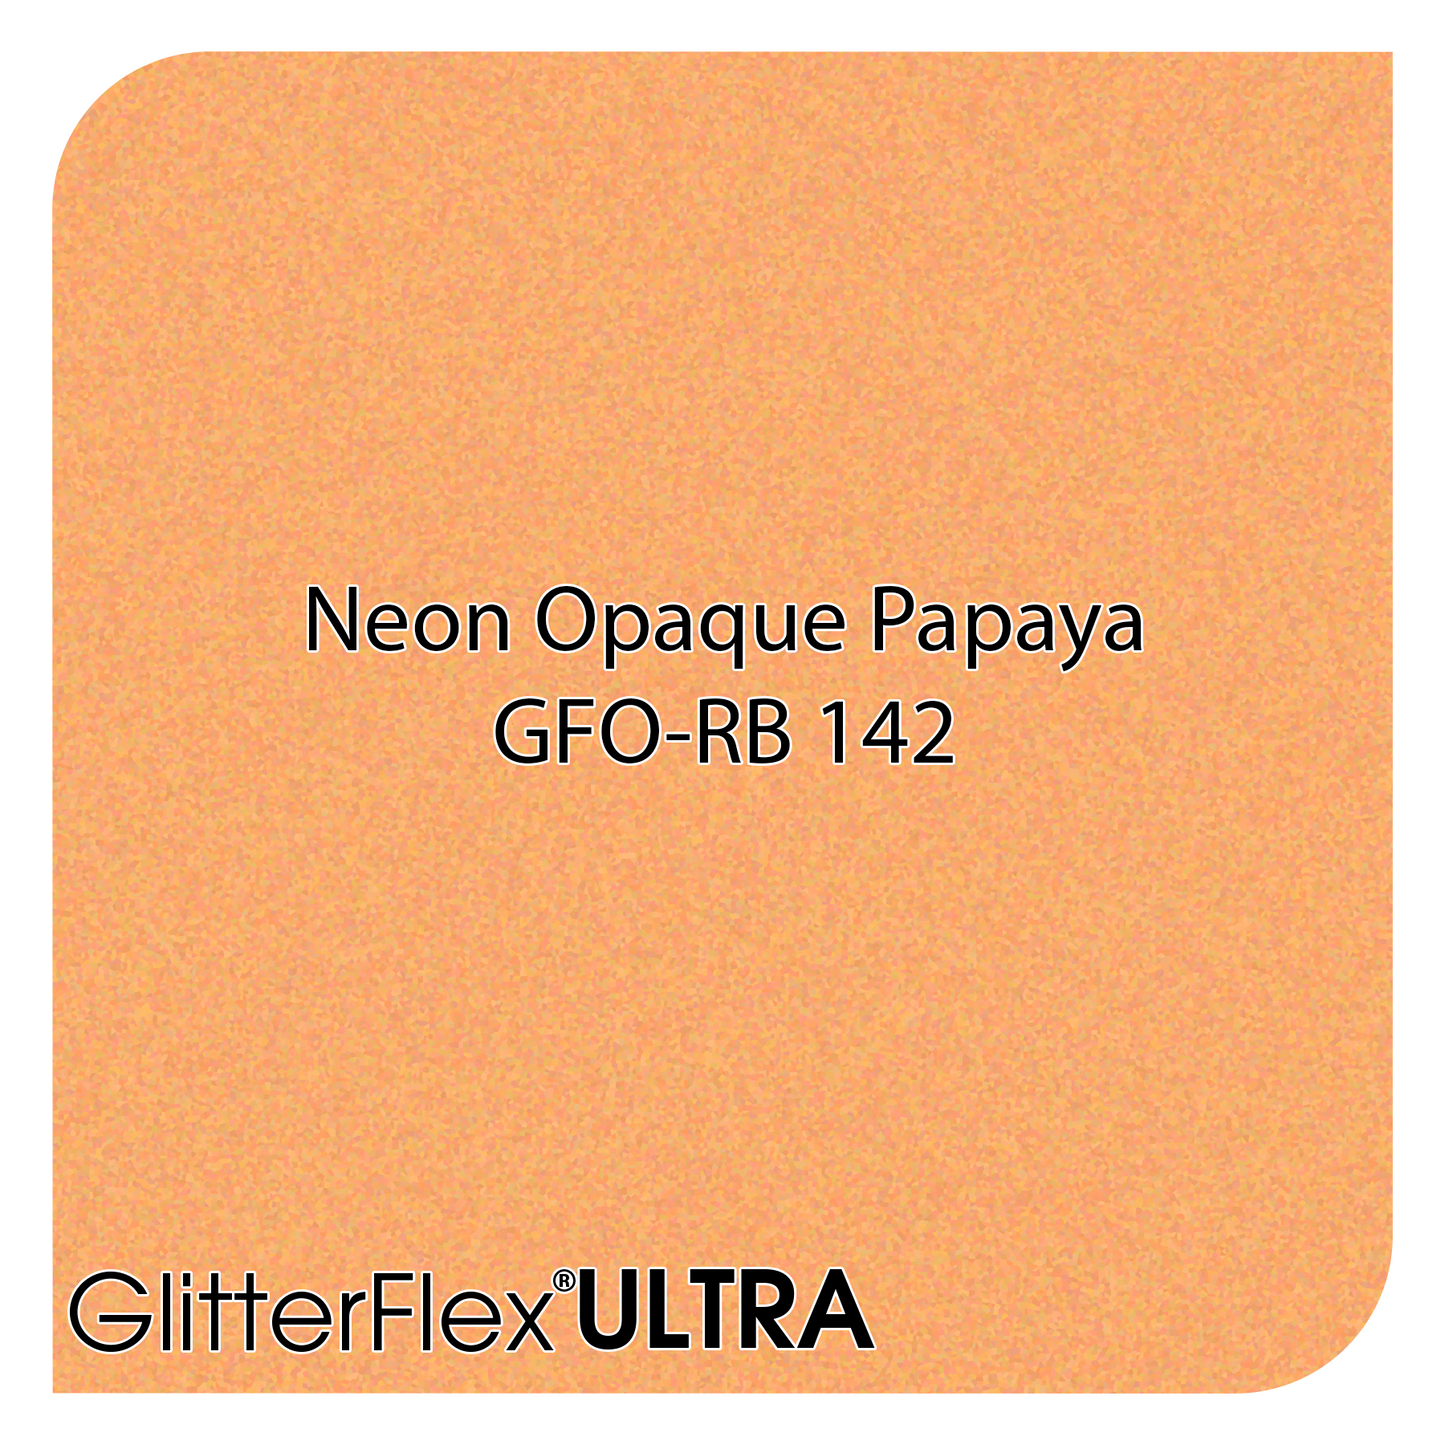 GLITTERFLEX® ULTRA NEON OPAQUES - 12" x 10 Yard (30 Feet)